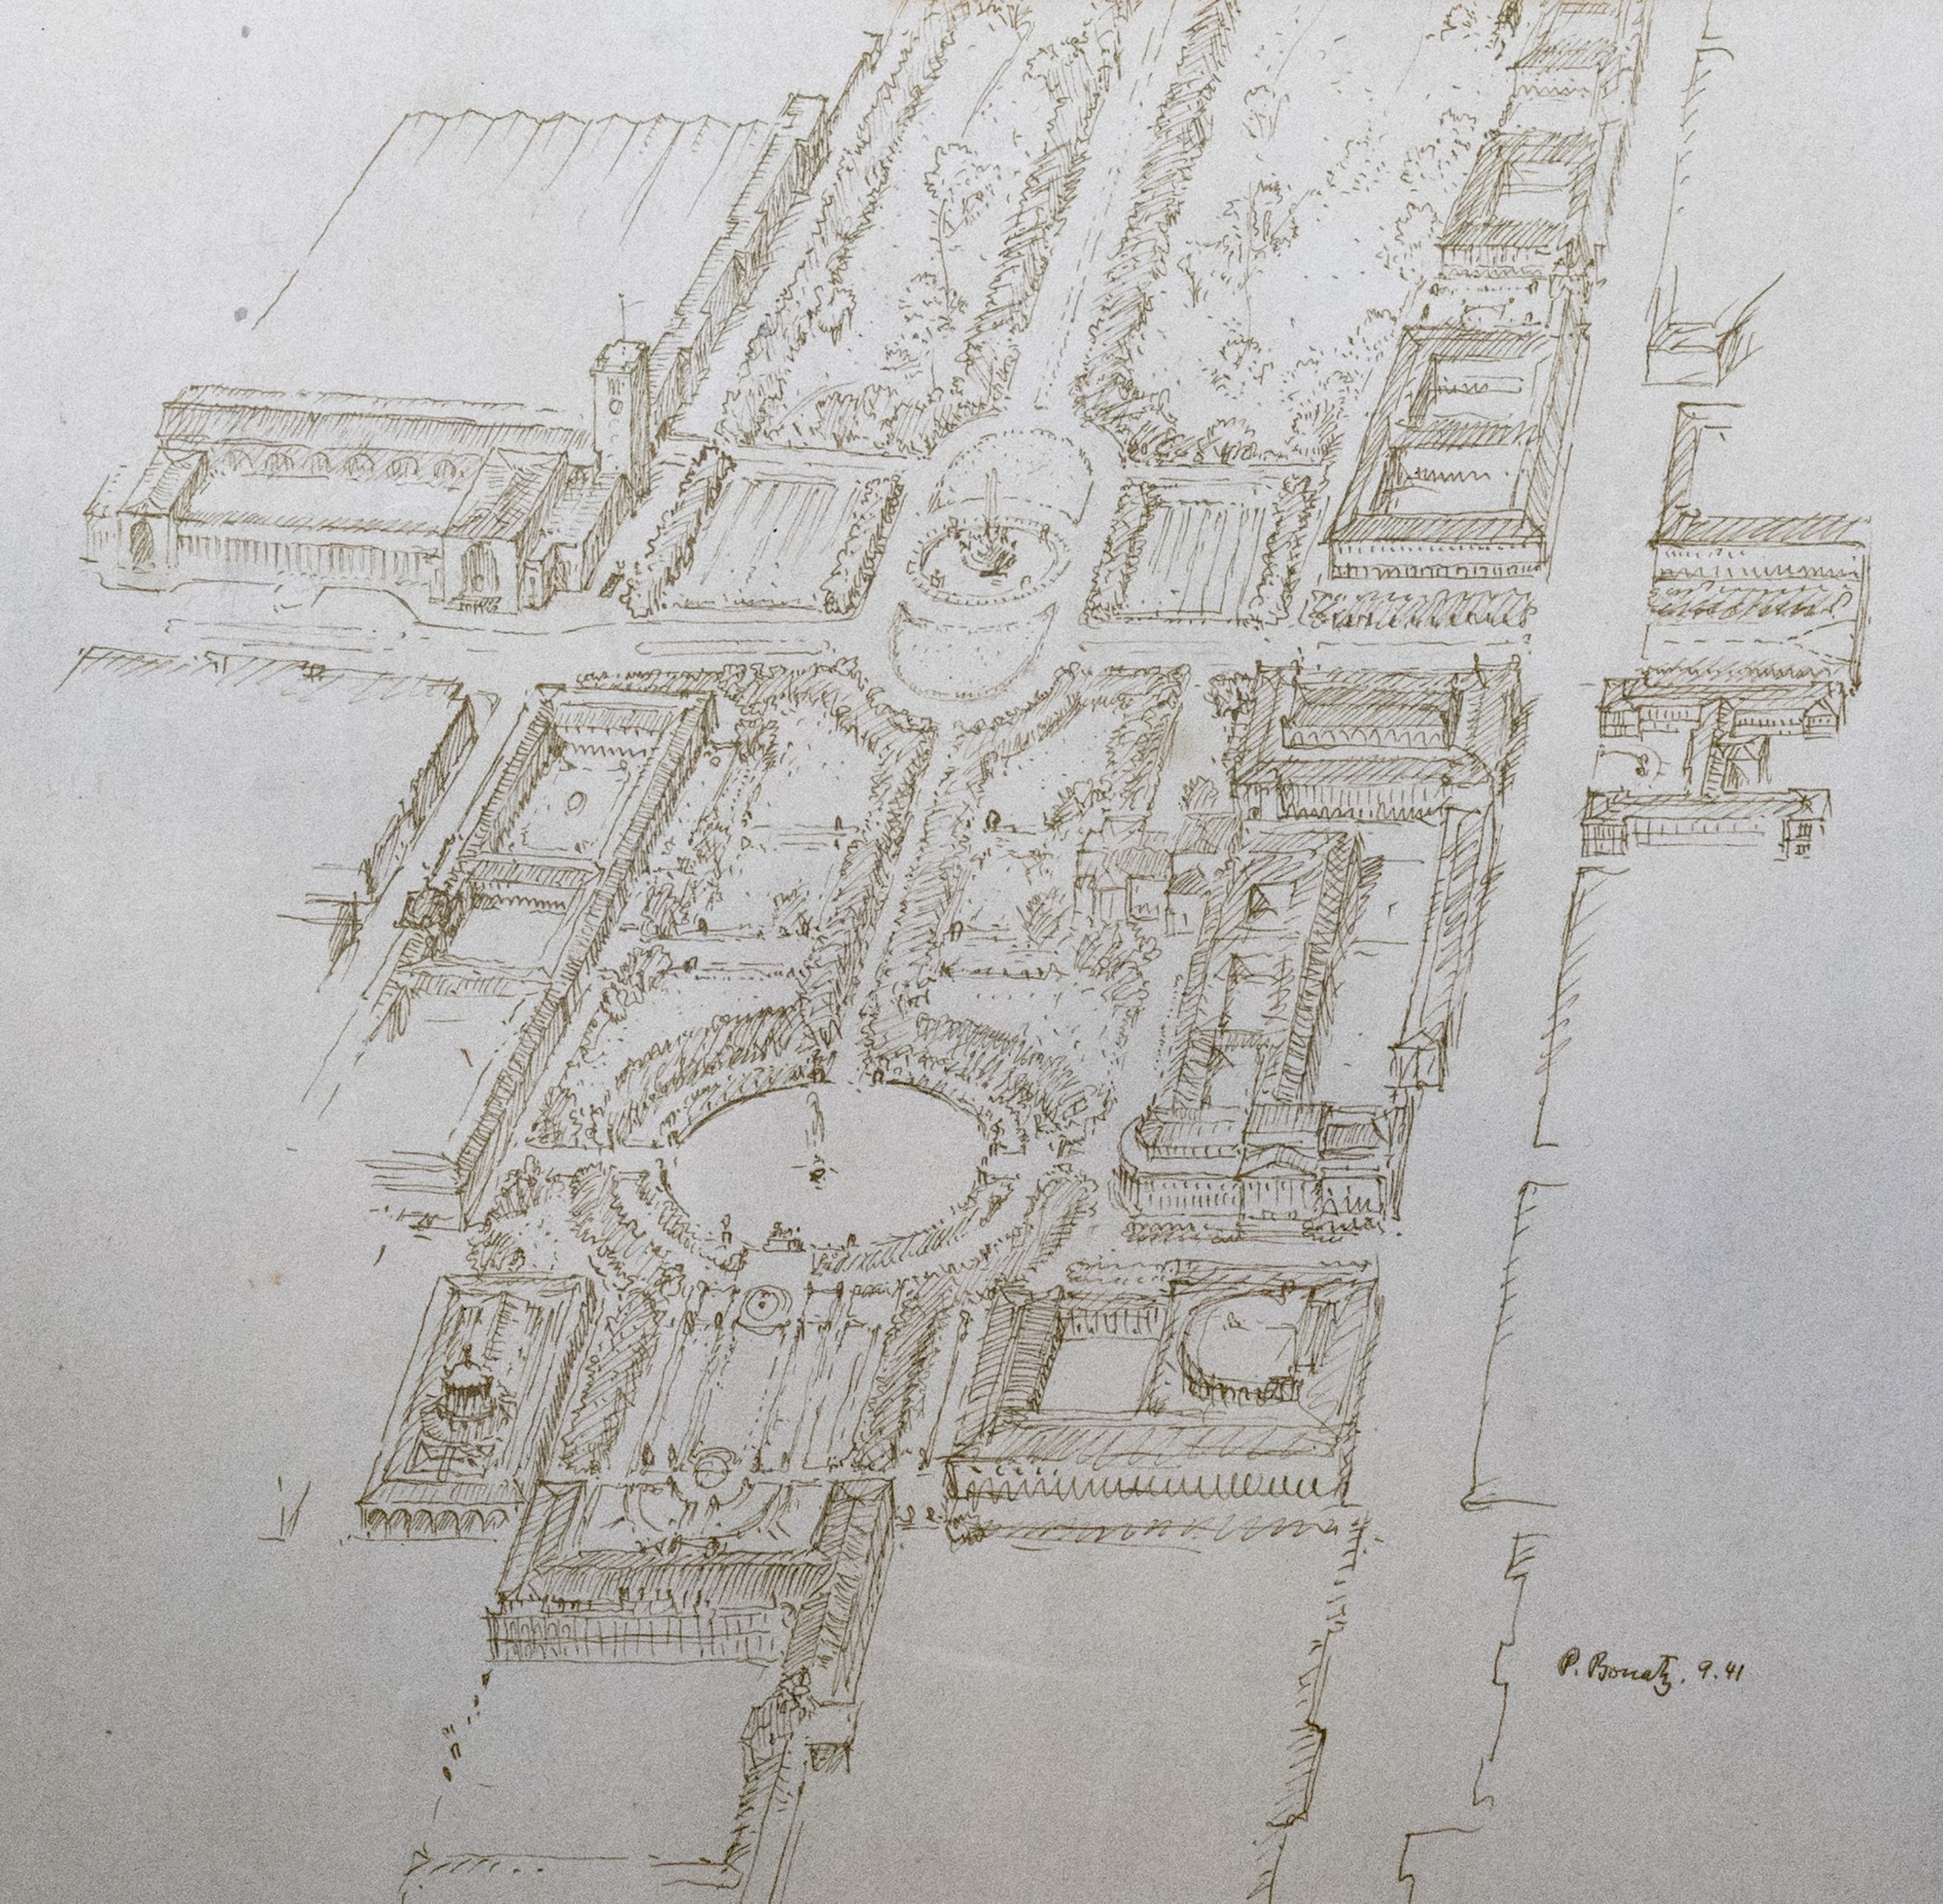 Paul Bonatz 1941: rigorose Pläne für Umgestaltung von Neckarstraße und Schlossgarten